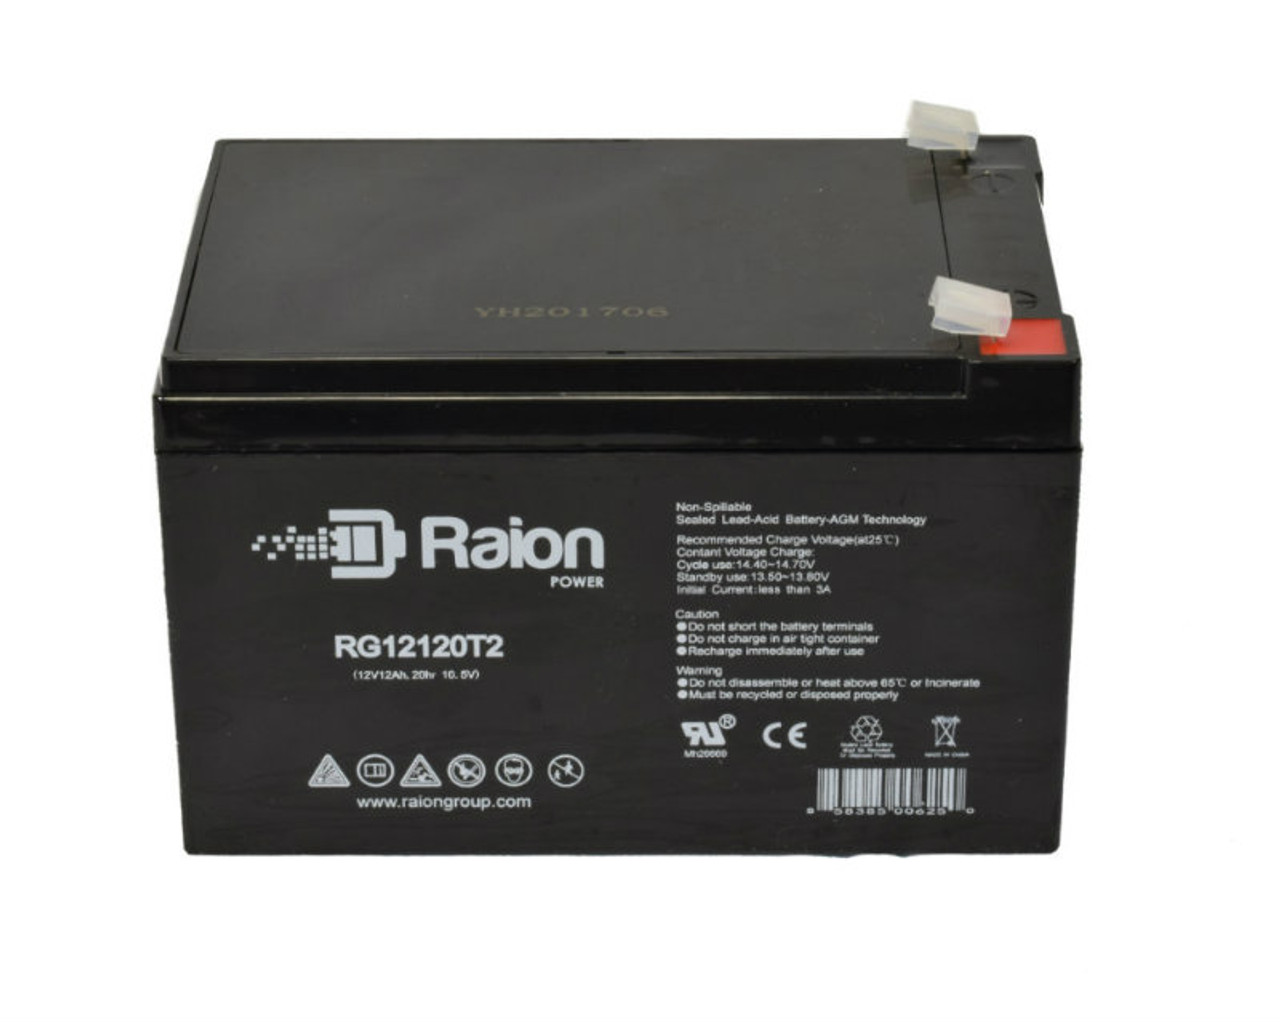 Raion Power RG12120T2 SLA Battery for Zip'r Traveler 3-Wheel